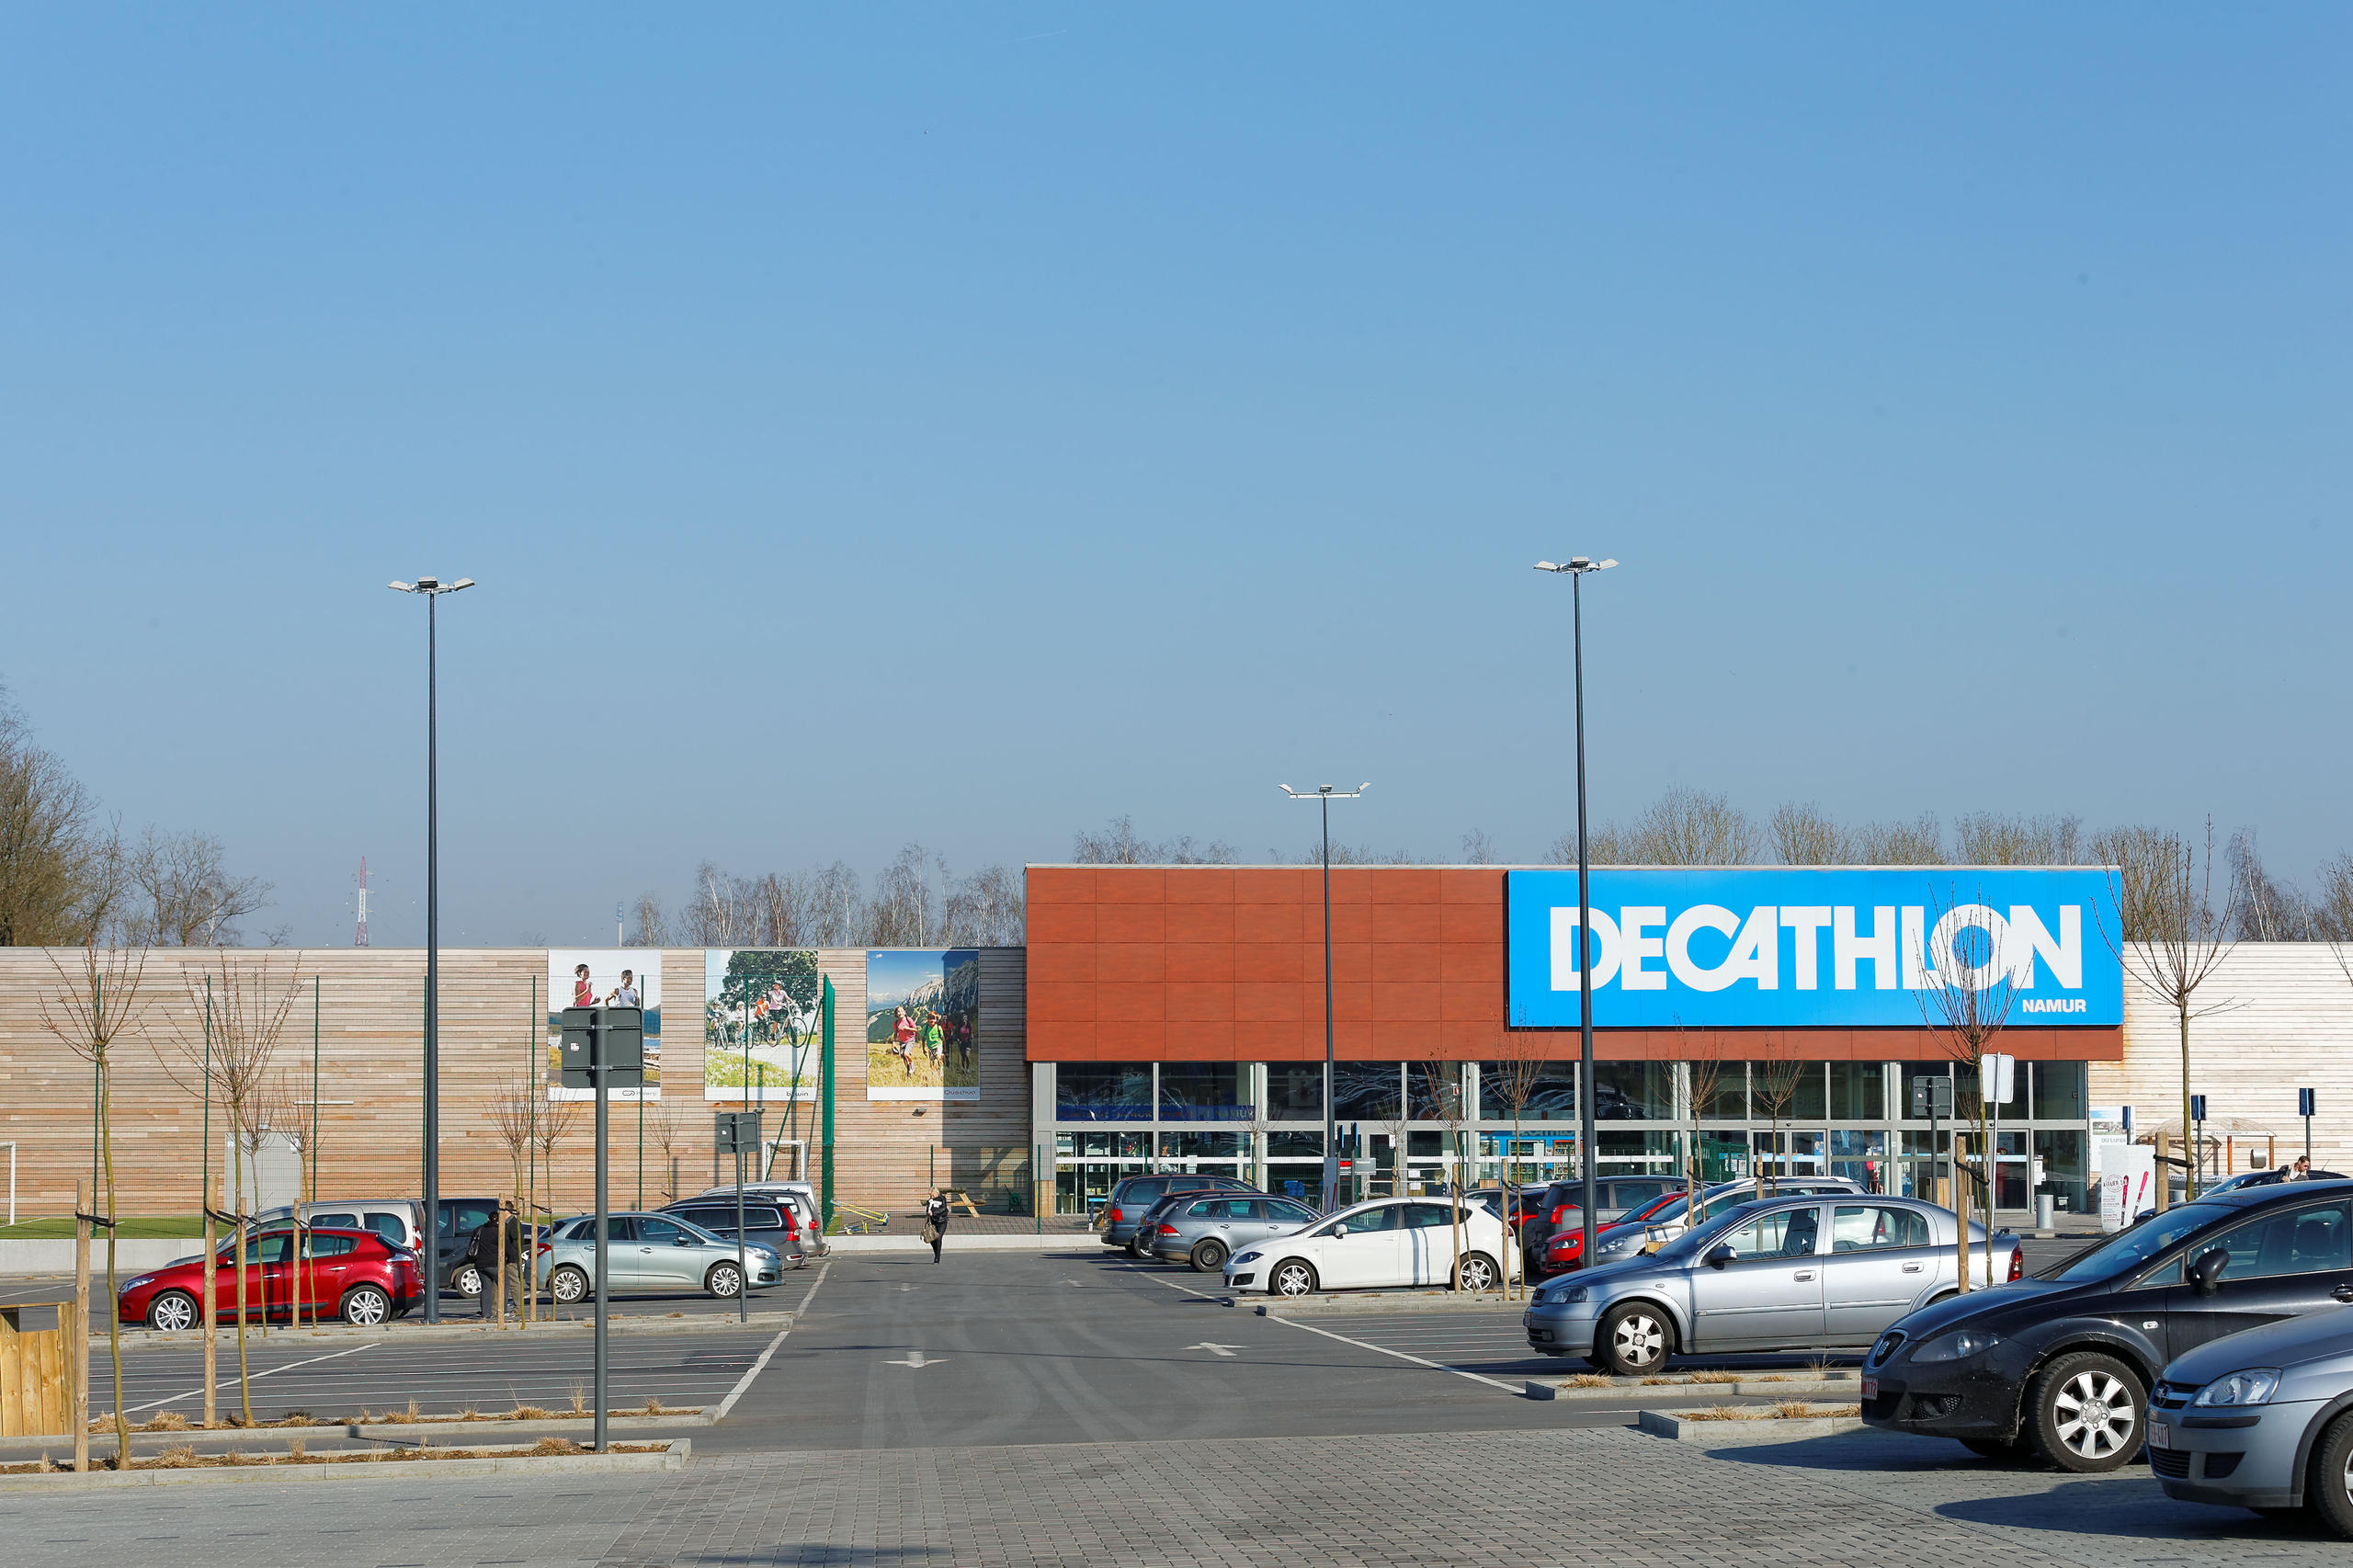 Decathlon store in Namur, Belgium